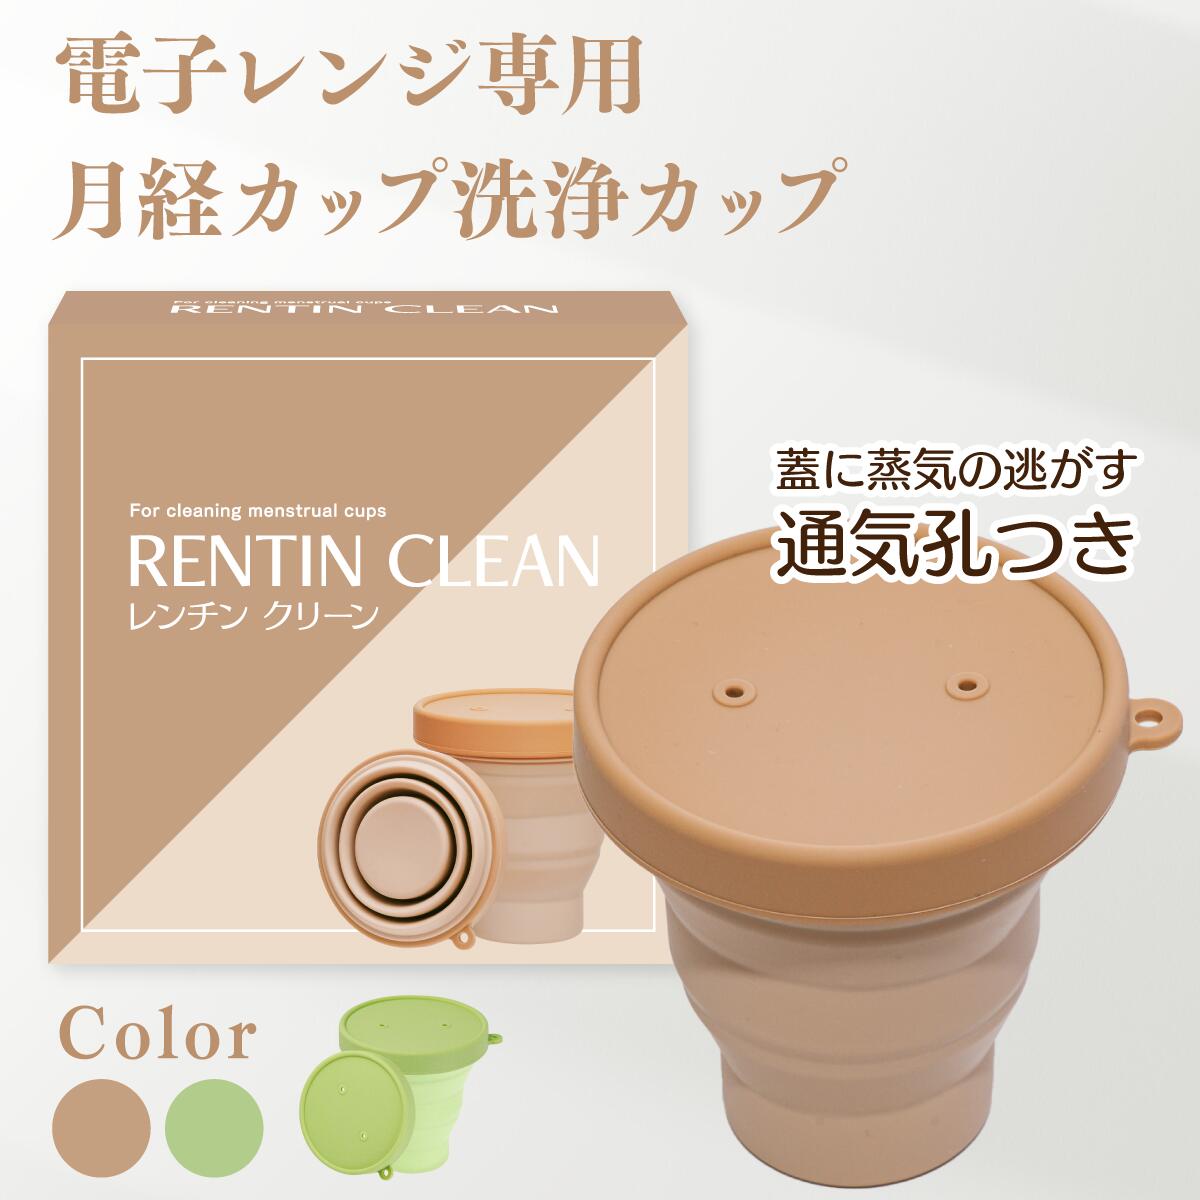 【月経カップ専用洗浄カップ】RENTIN CLEAN 煮沸消毒 シリコンカップ 電子レンジ専用 簡単に清潔 レンチンクリーン …